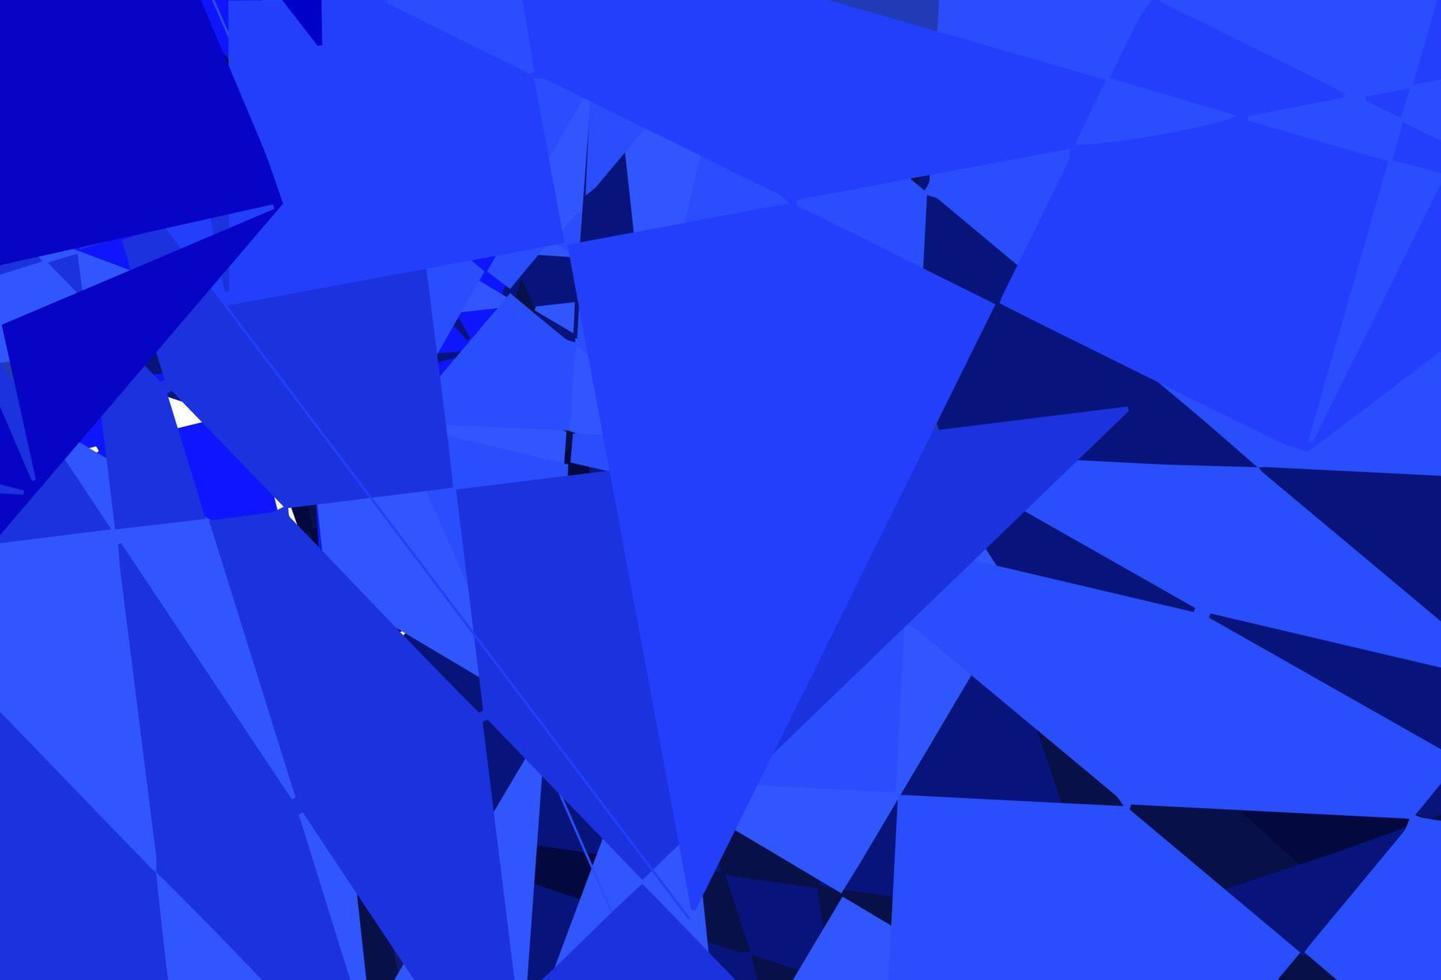 mörkrosa, blå vektormönster med månghörniga former. vektor